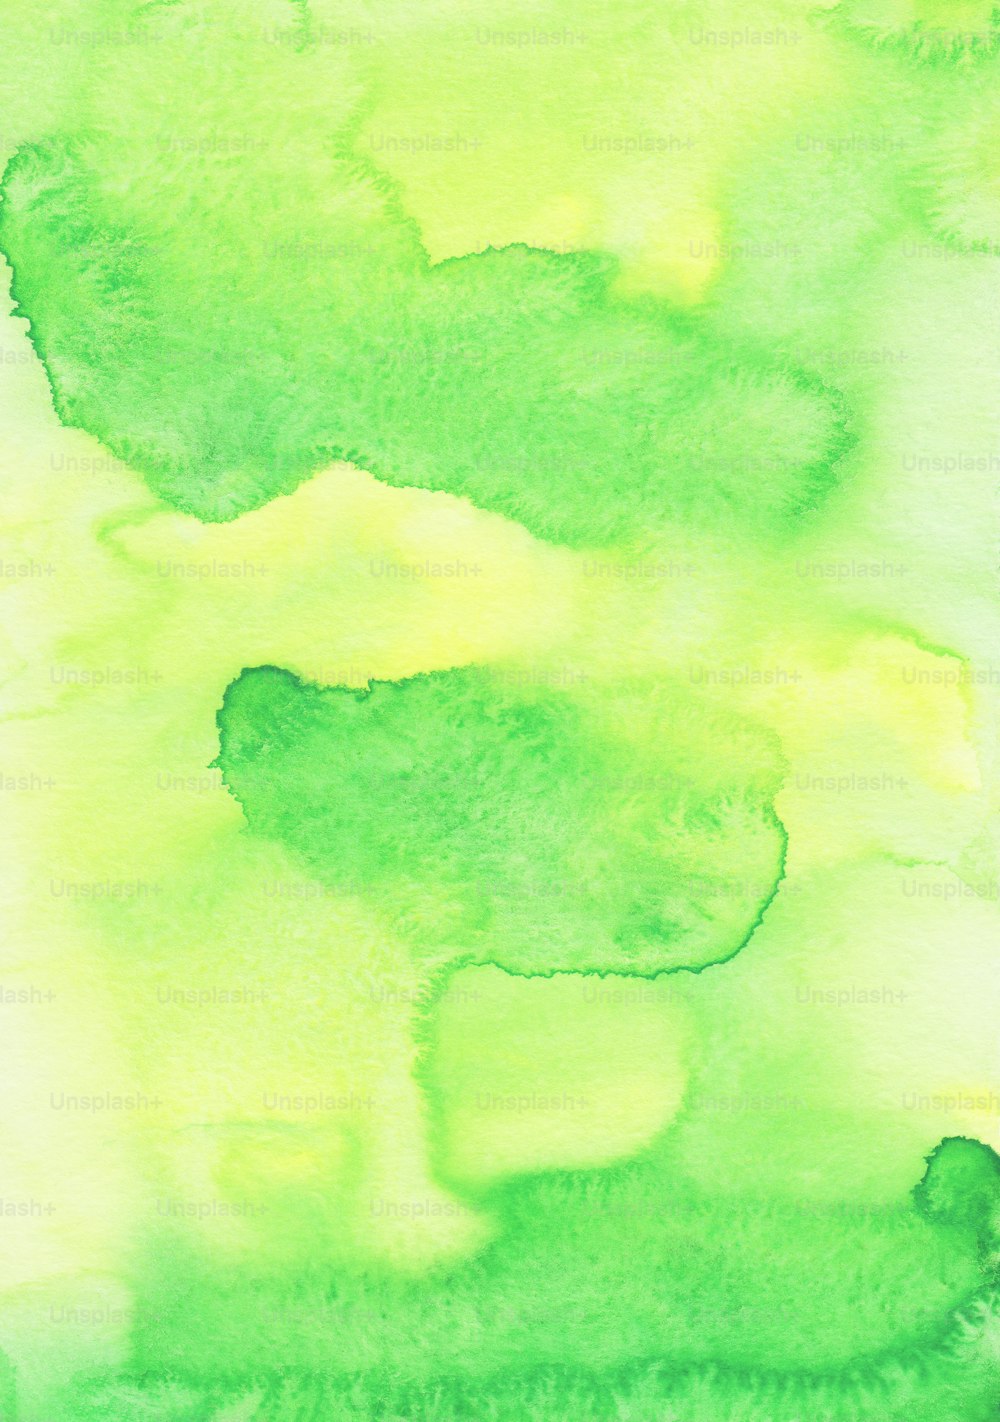 une peinture de couleurs vertes et jaunes sur fond blanc